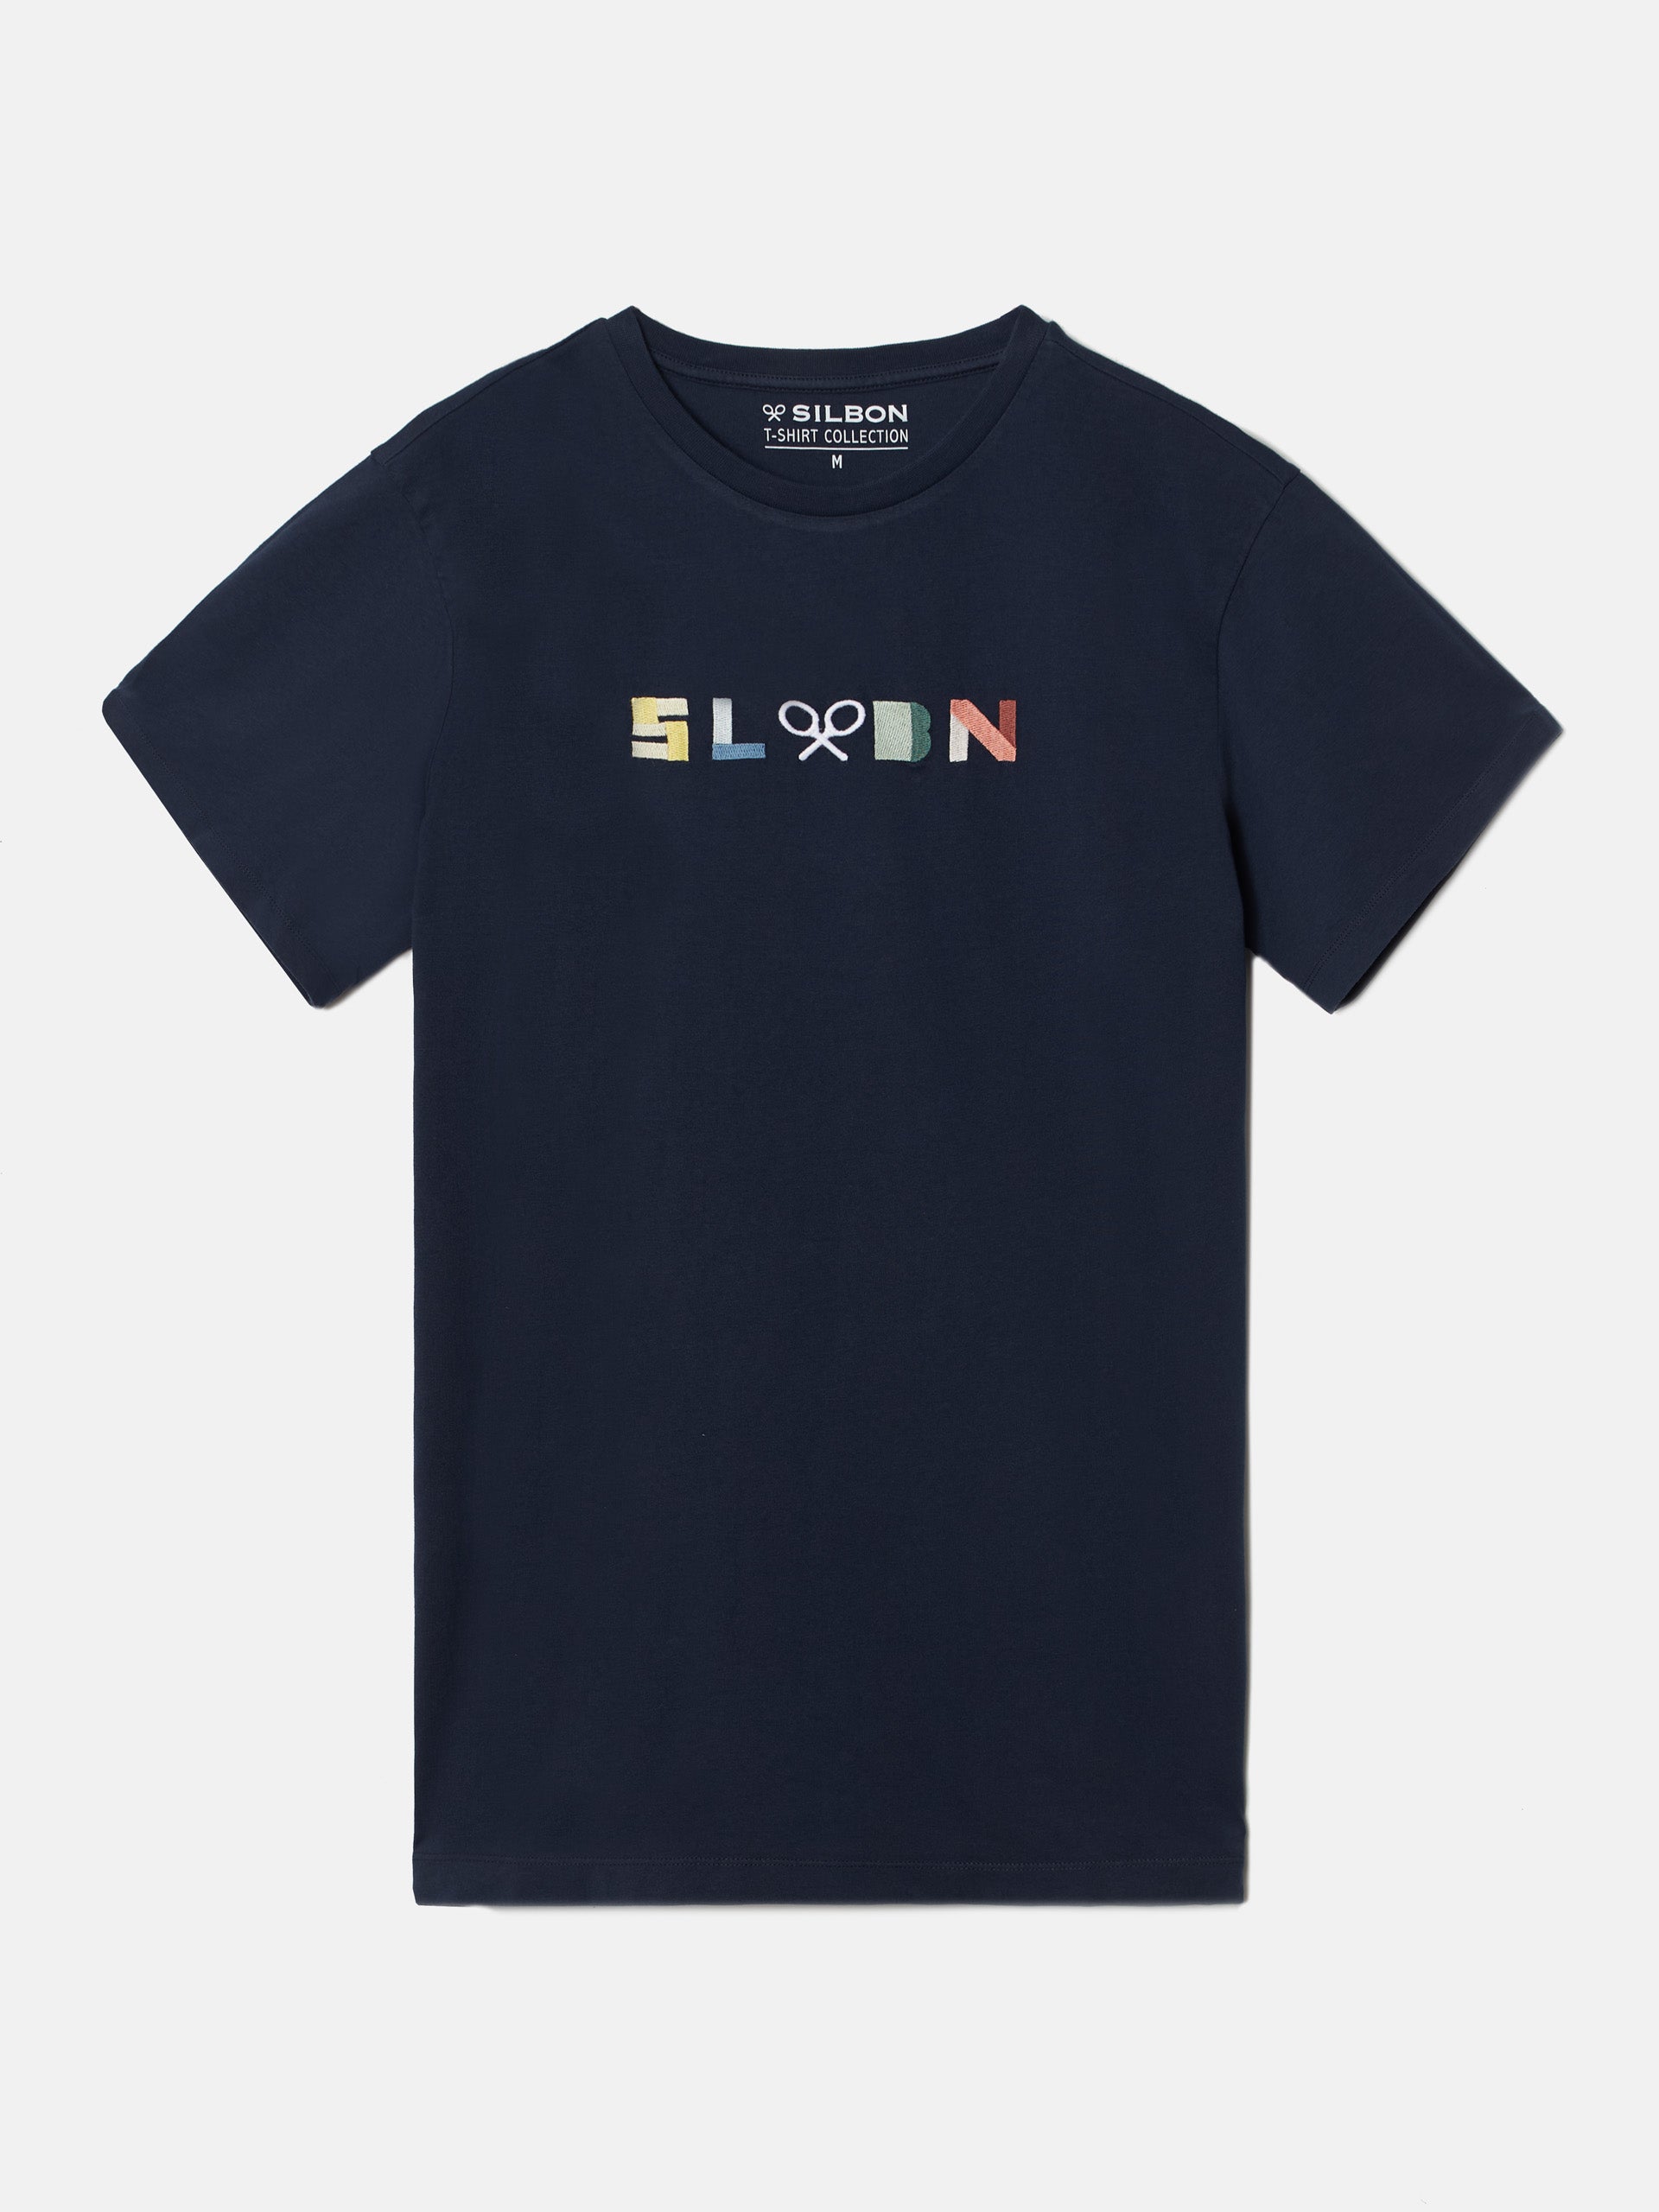 Navy blue SLBN T-shirt